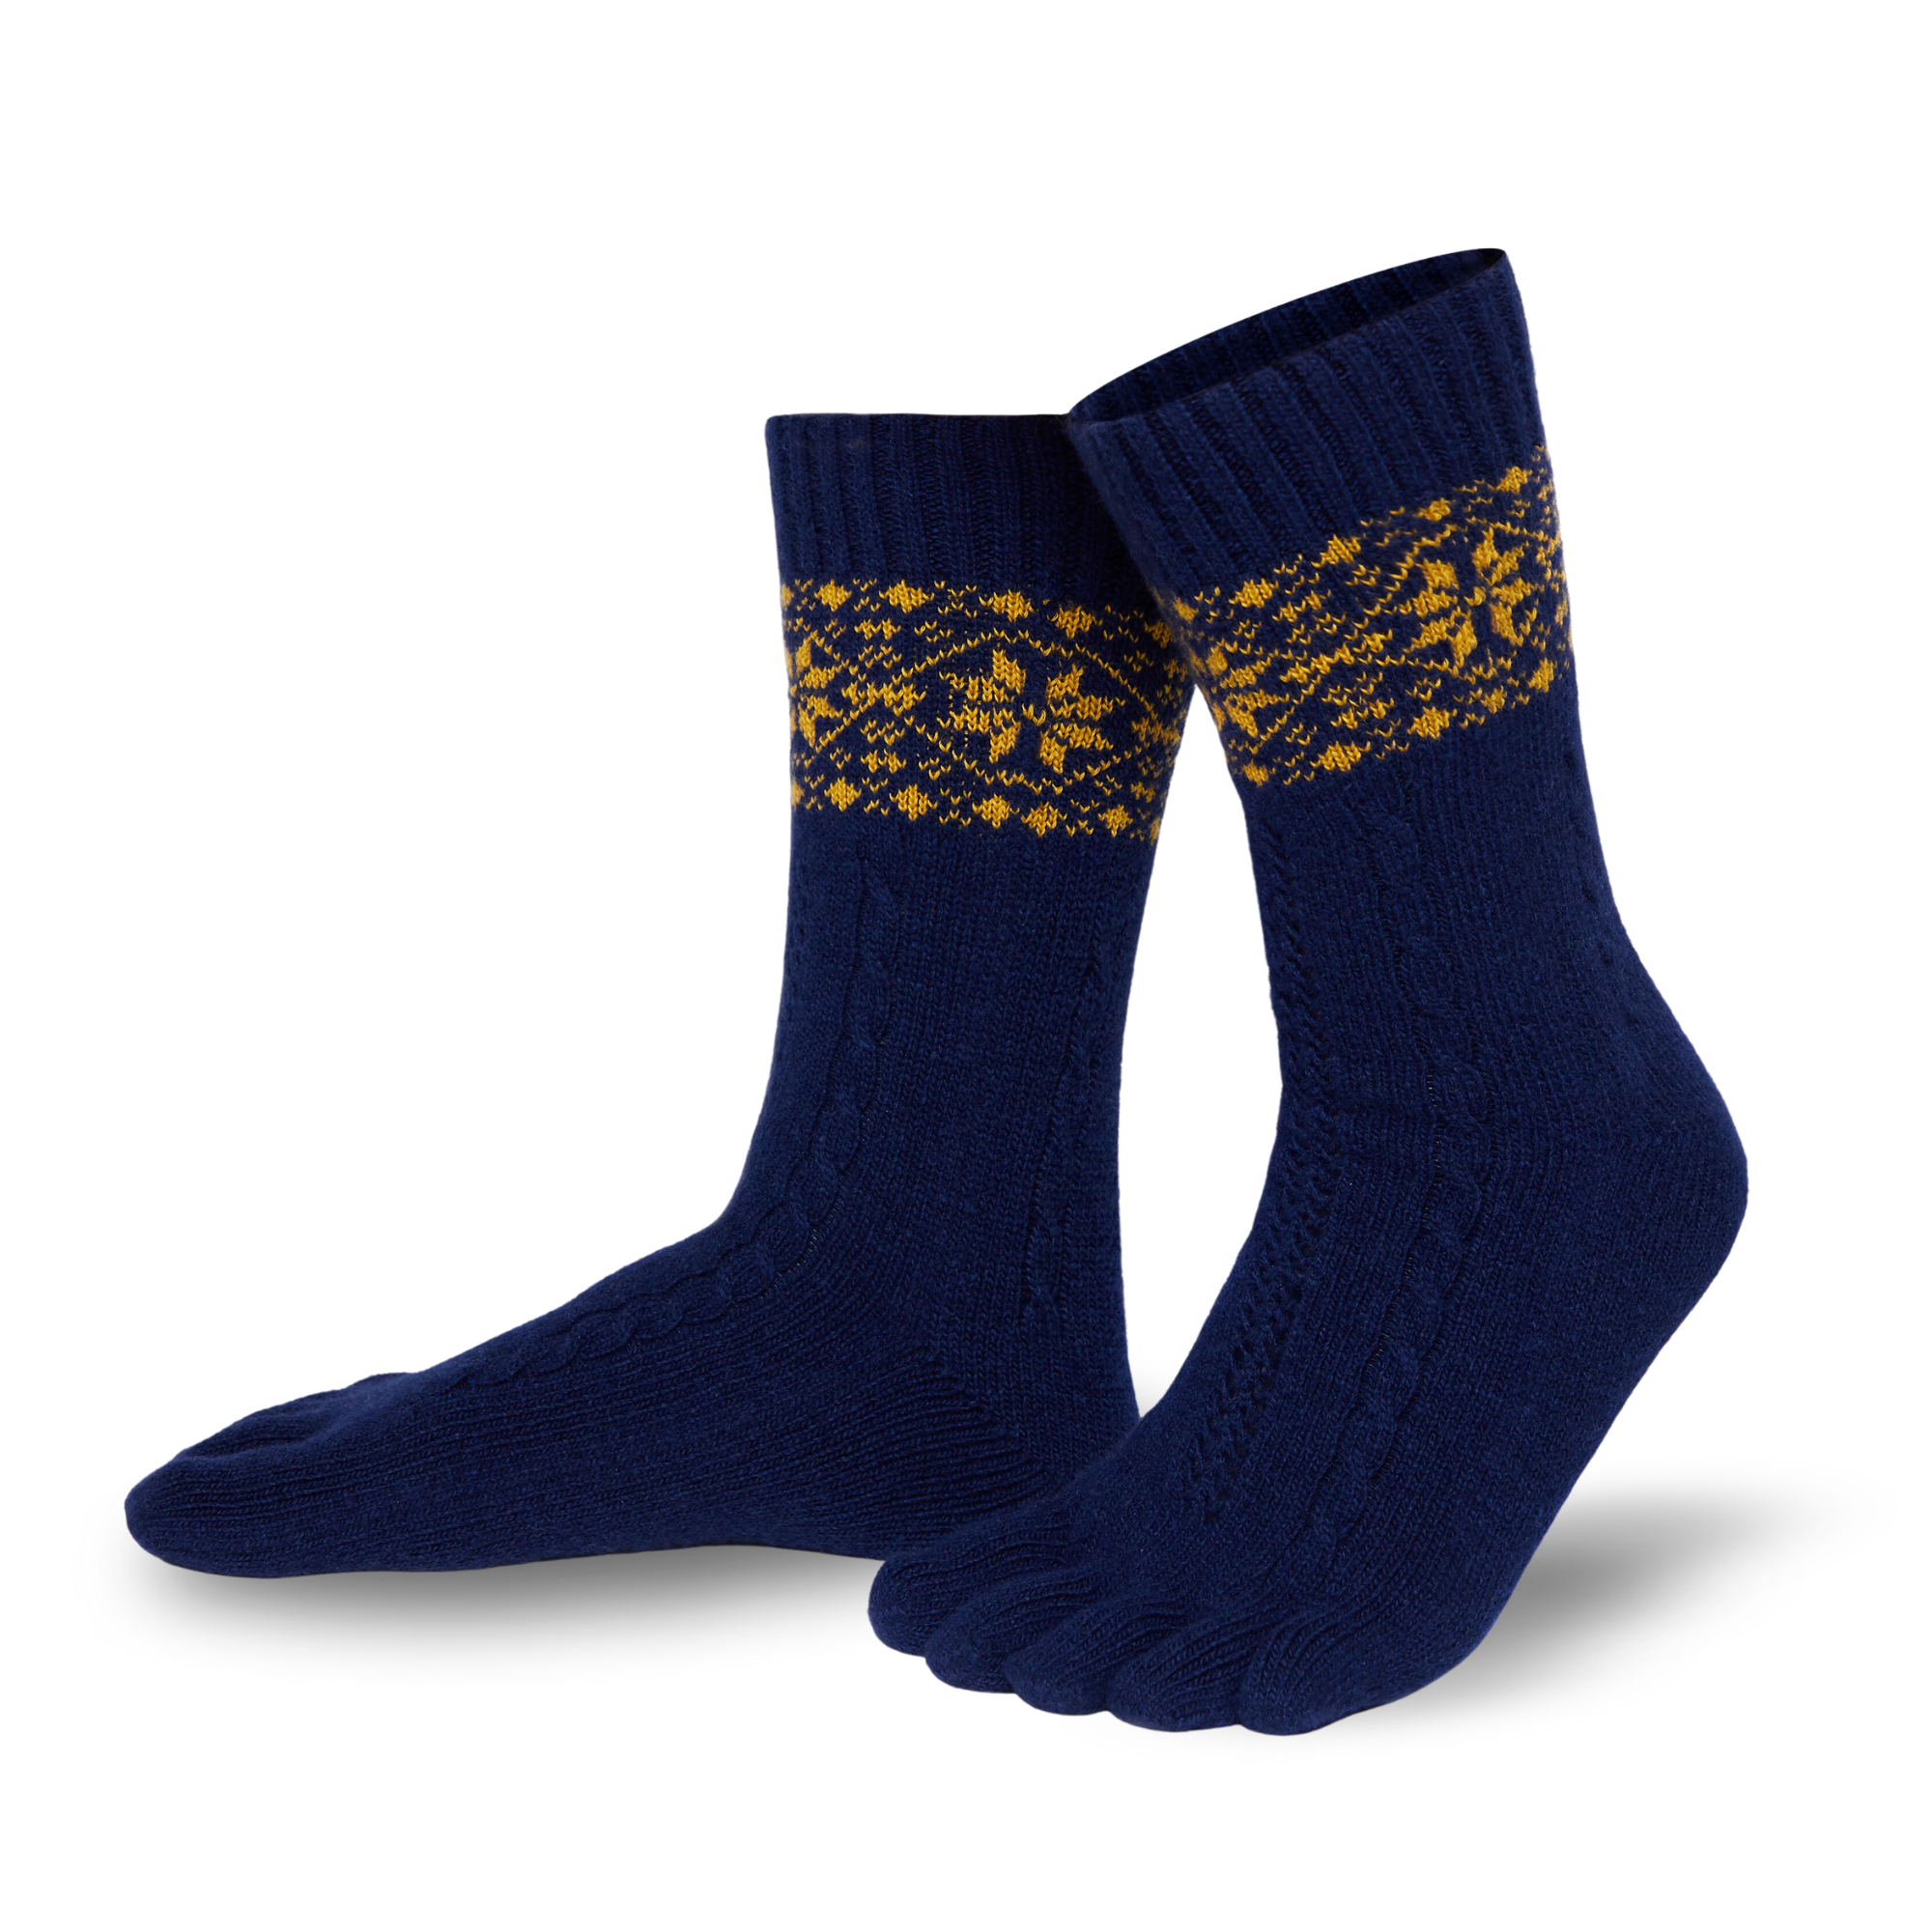 Knitido  chaussettes à orteils chaud en mérinos & cachemire avec motif de taches de neige en bleu marine/or